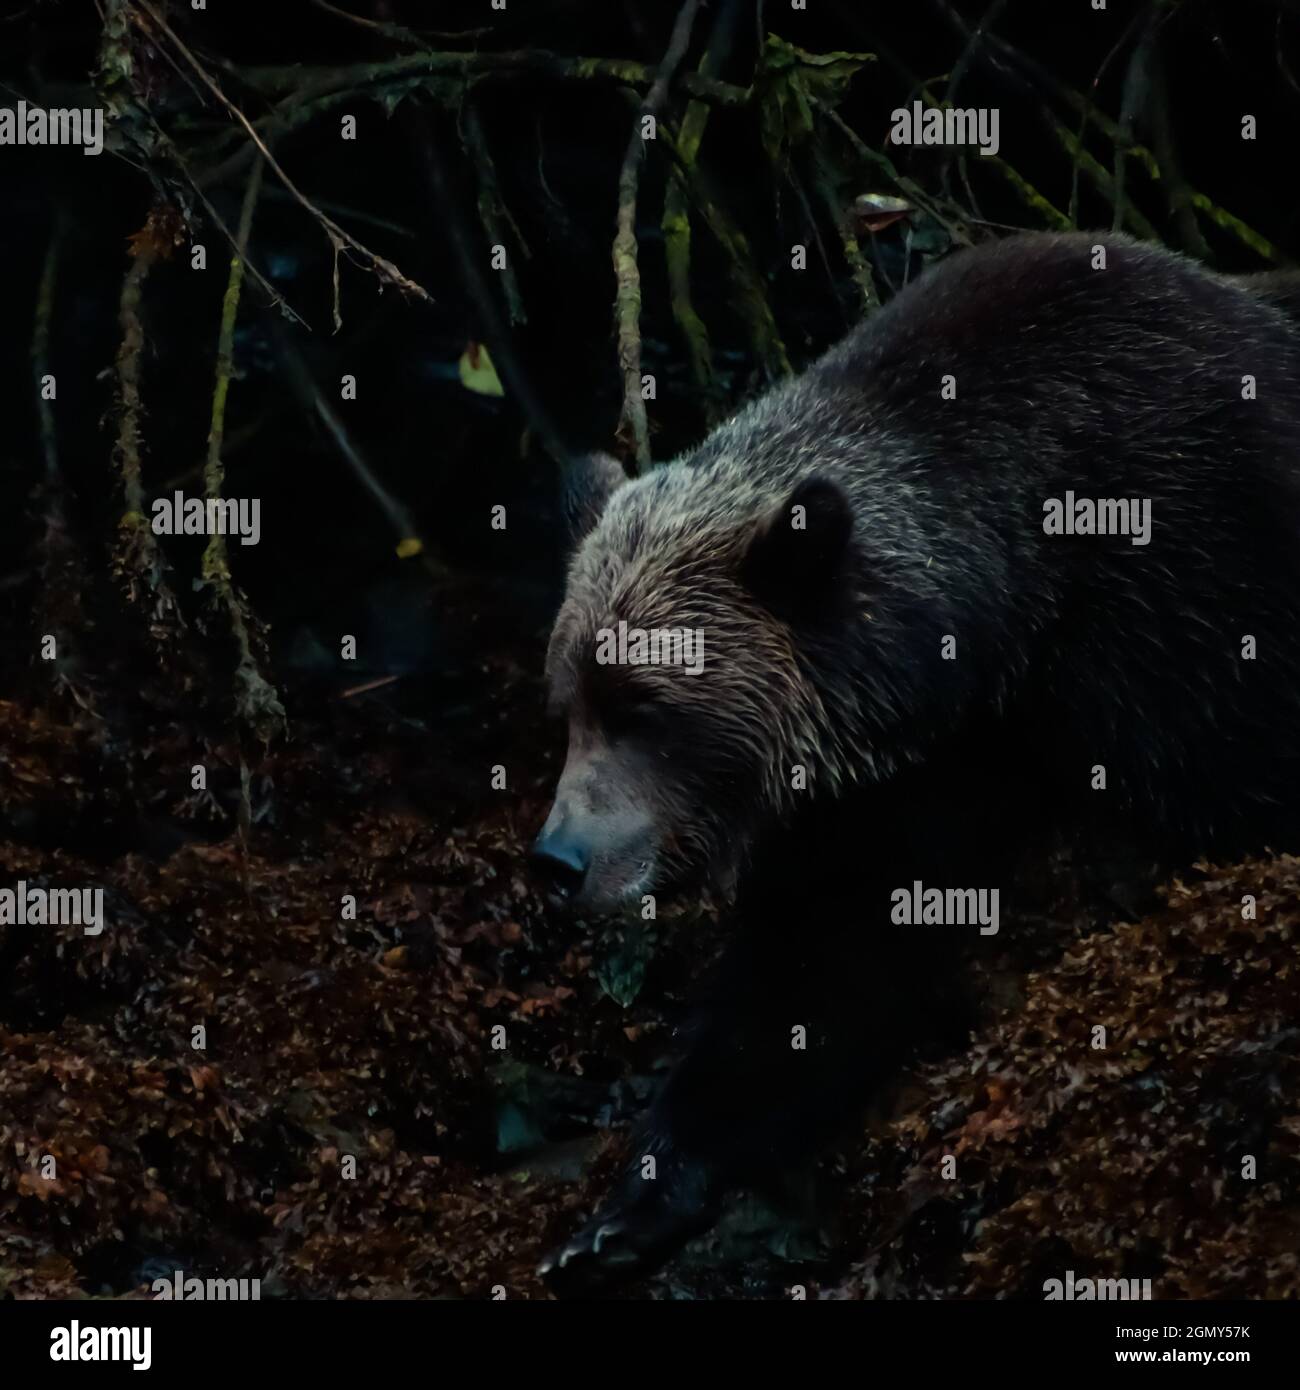 Vista de un perfil de oso grizzly en las sombras en un banco en la ensenada de Khutzeymateen. Foto de stock